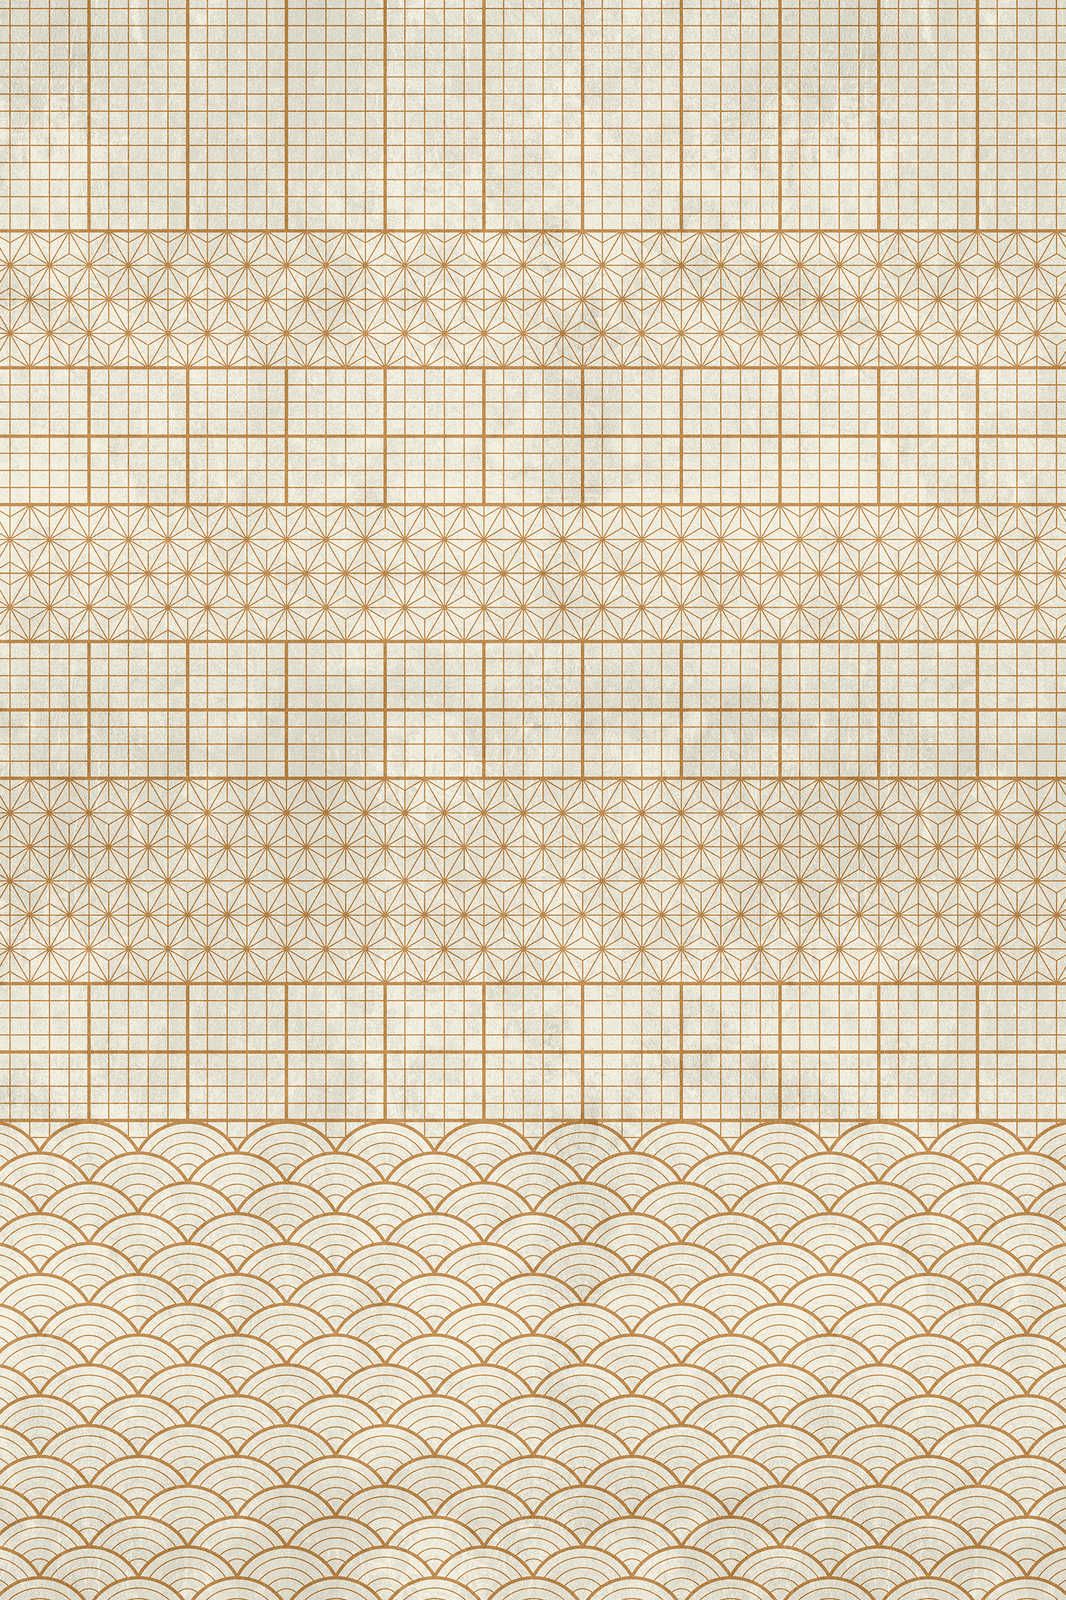             Volière 4 - Toile beige décorée or style vintage - 0,90 m x 0,60 m
        